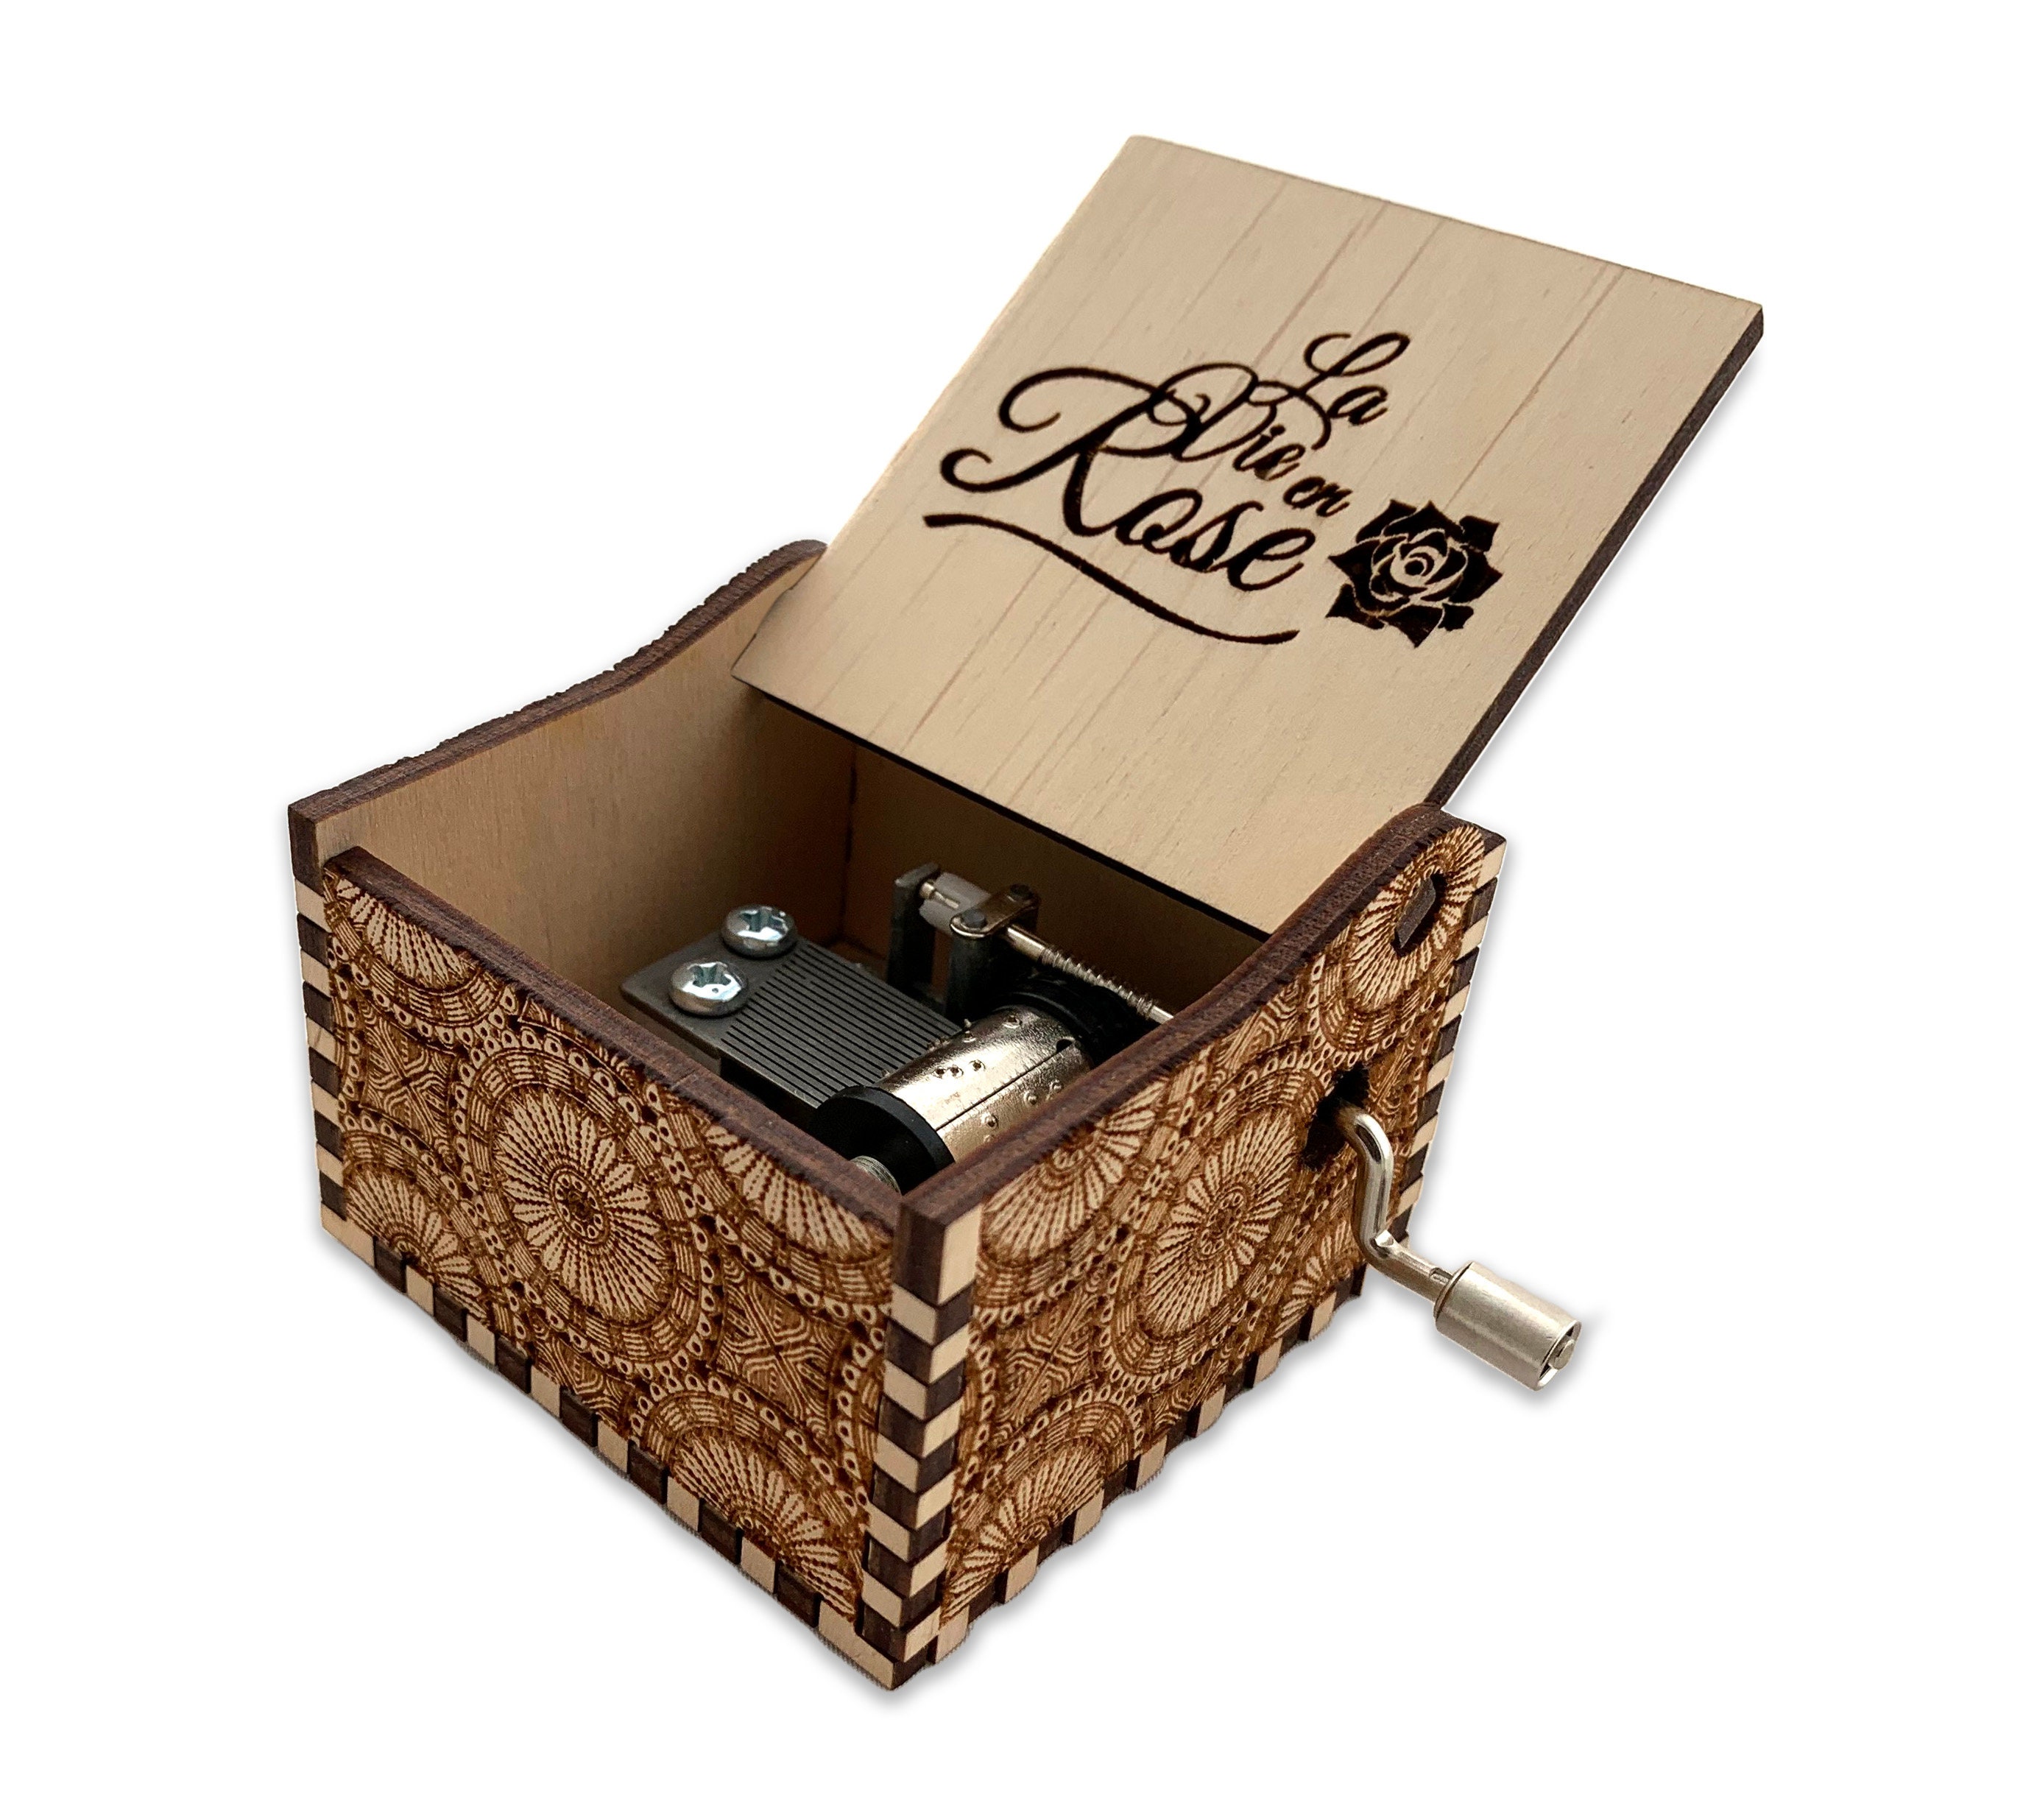 Xmas Spieluhr Handkurbel Holz Classic Music Box Crafts Geburtstagsgeschenk 